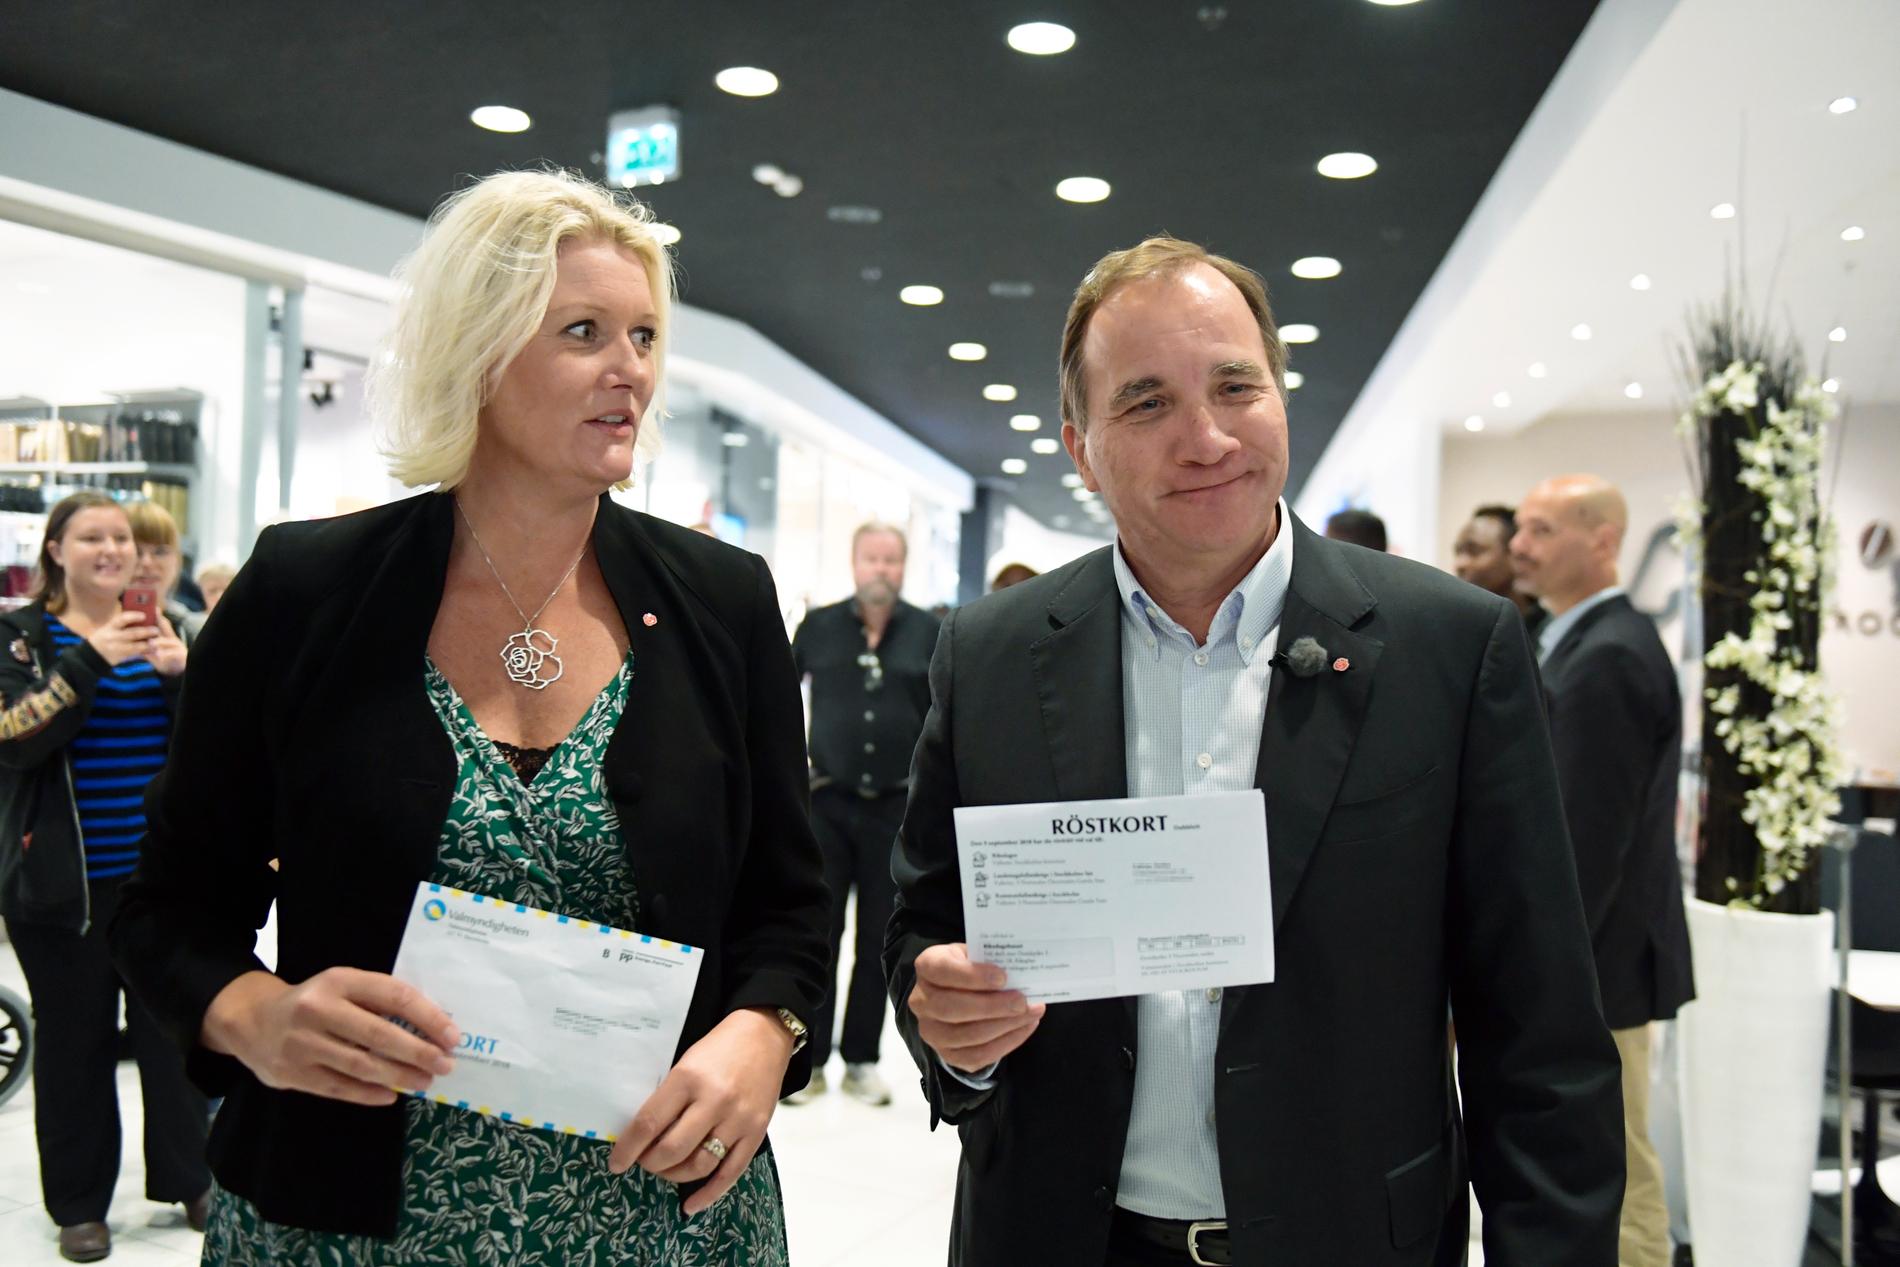 Socialdemokraternas partisekreterare Lena Rådström Baastad och statsminister Stefan Löfven (S) i Örebro för att förtidsrösta i Vågen gallerian.